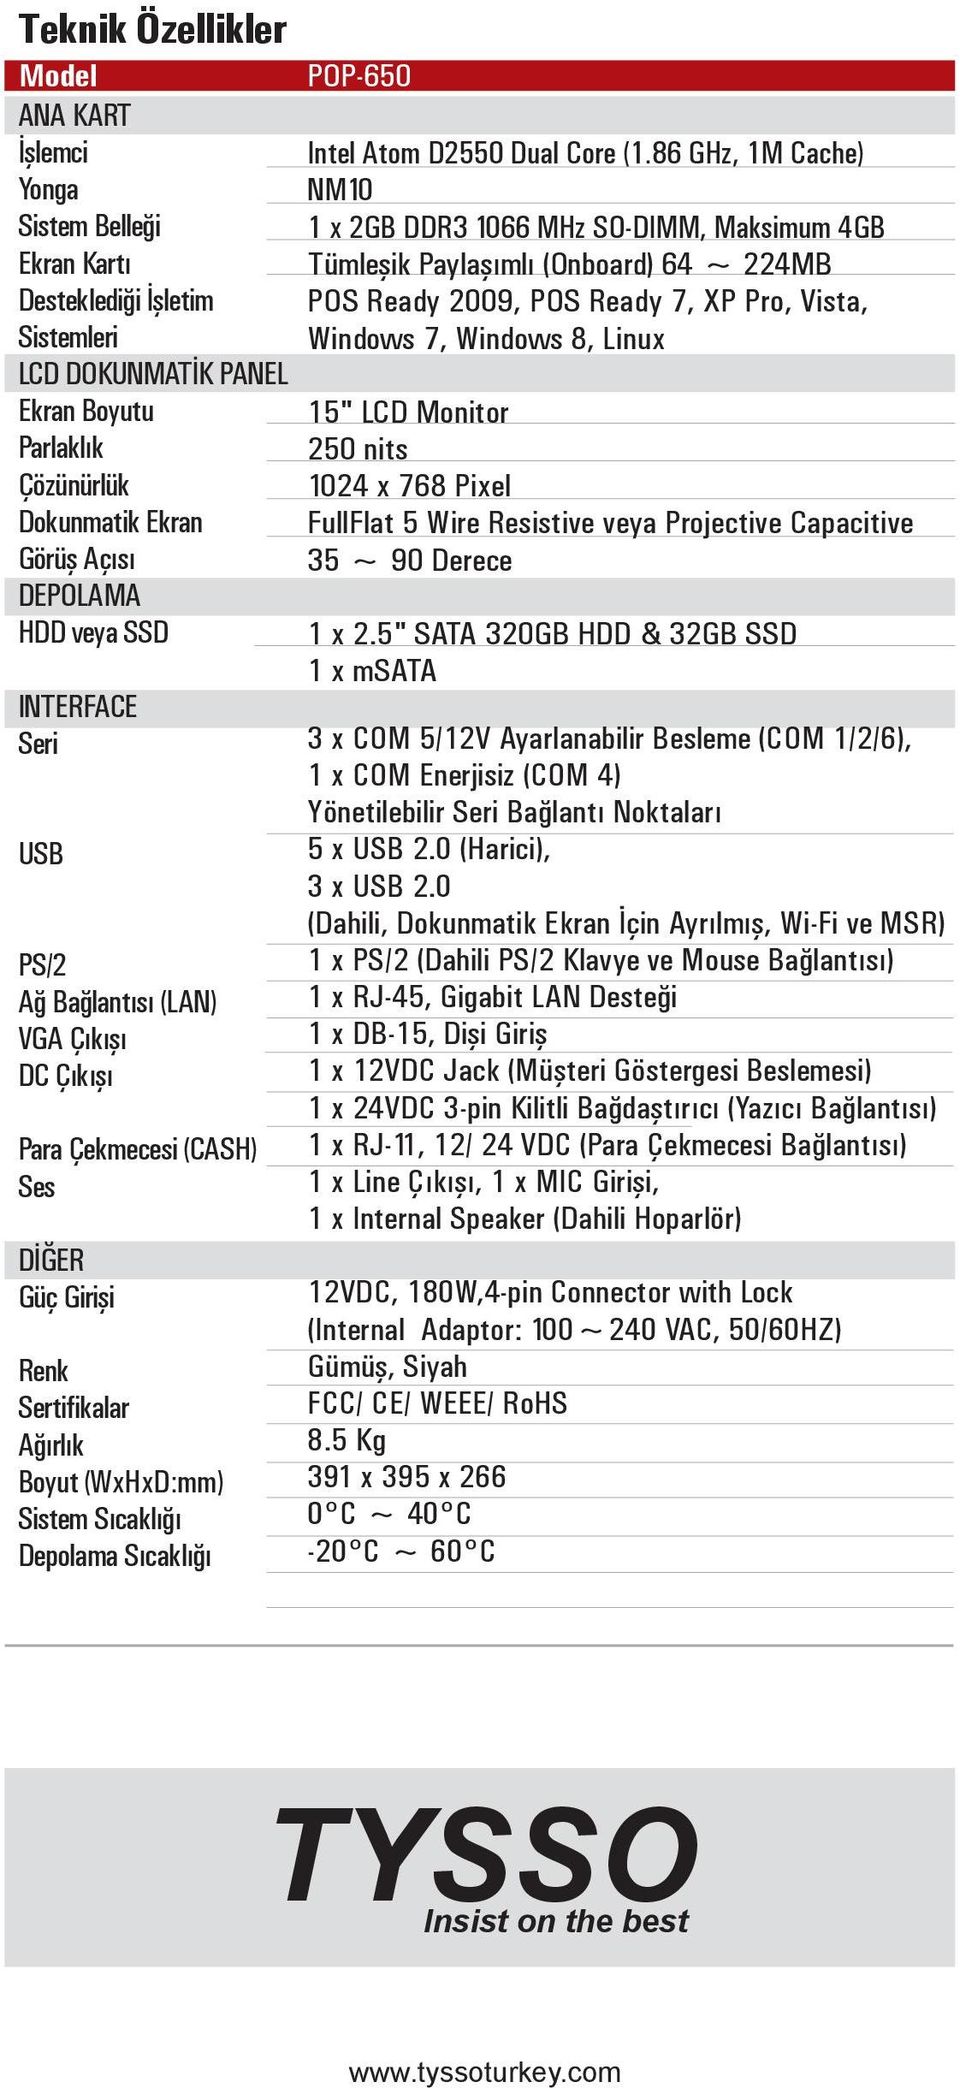 POP-650 Intel Atom D2550 Dual Core (1.